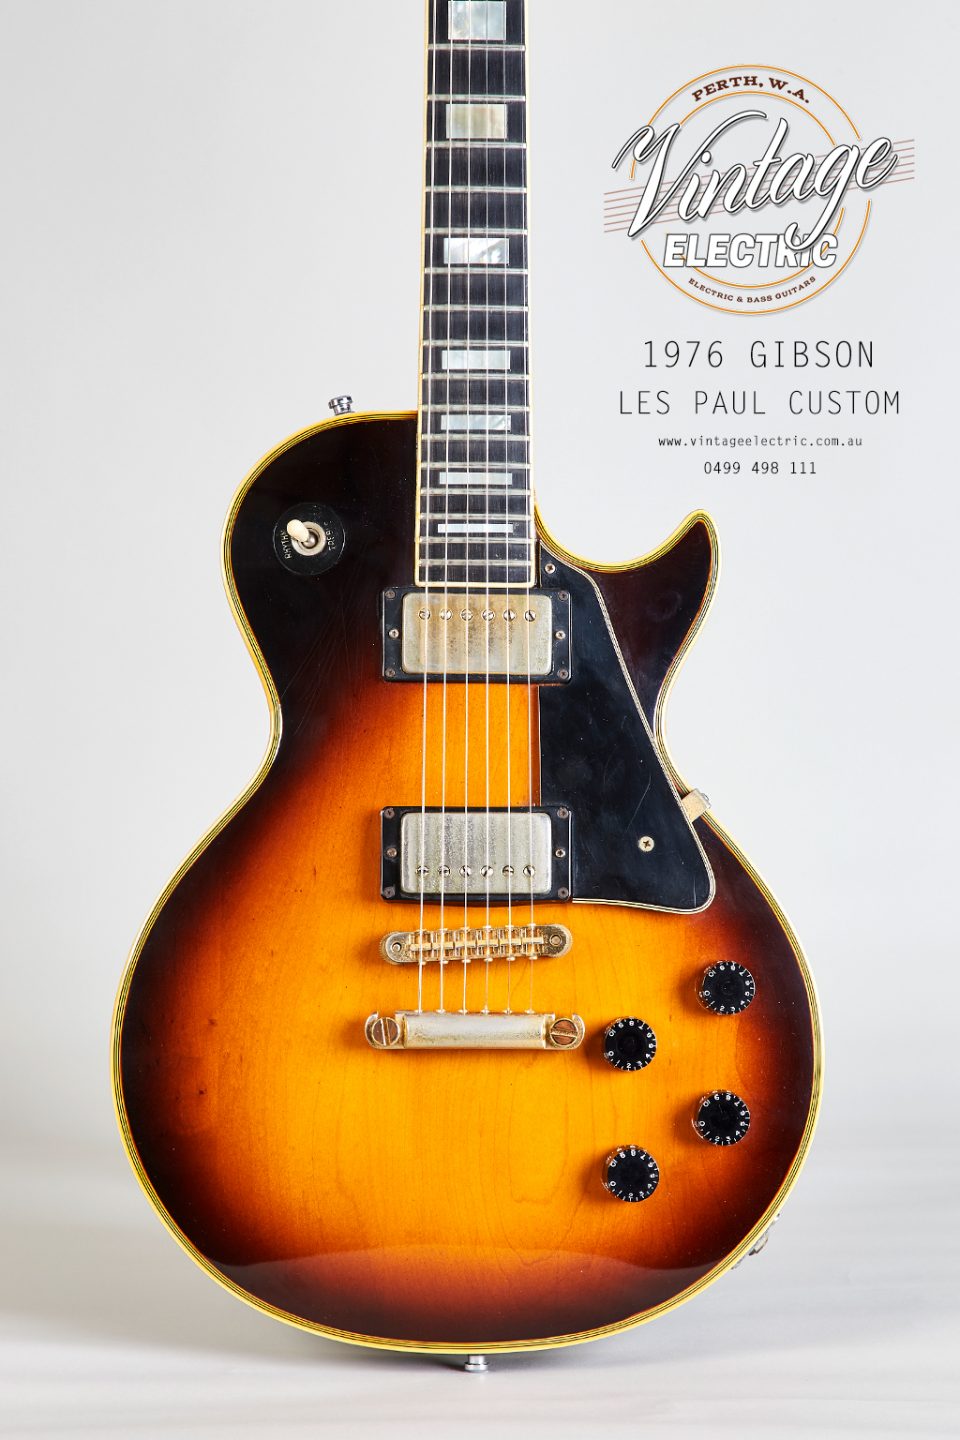 1976 Gibson Les Paul Custom Sunburst Body